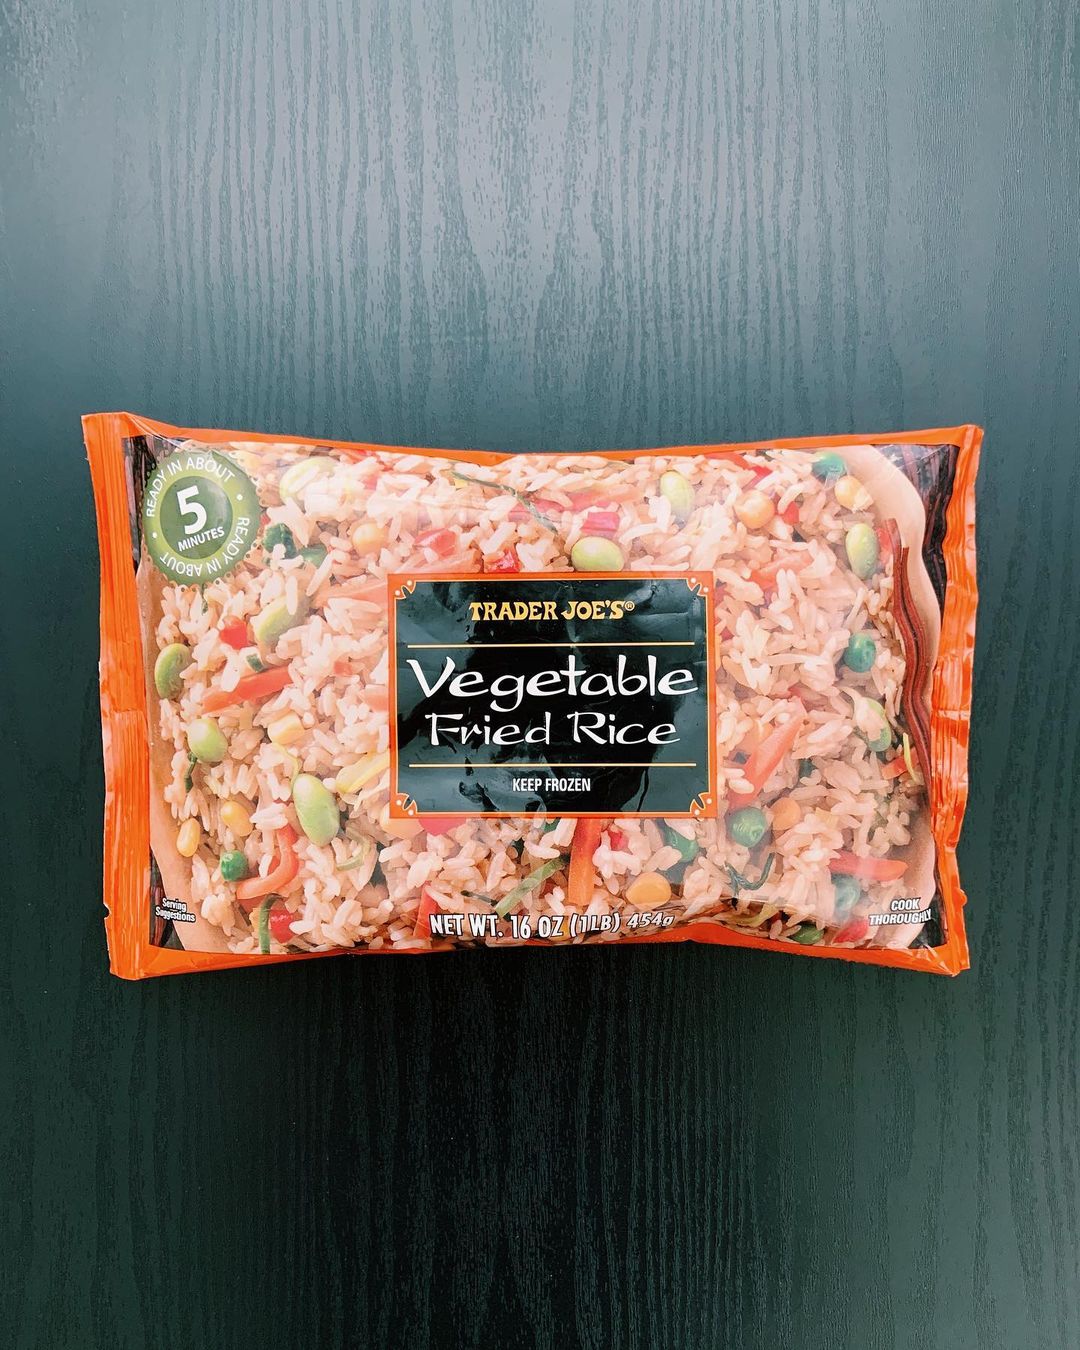 Veggie Fried Rice: 7.5/10This vegeta...